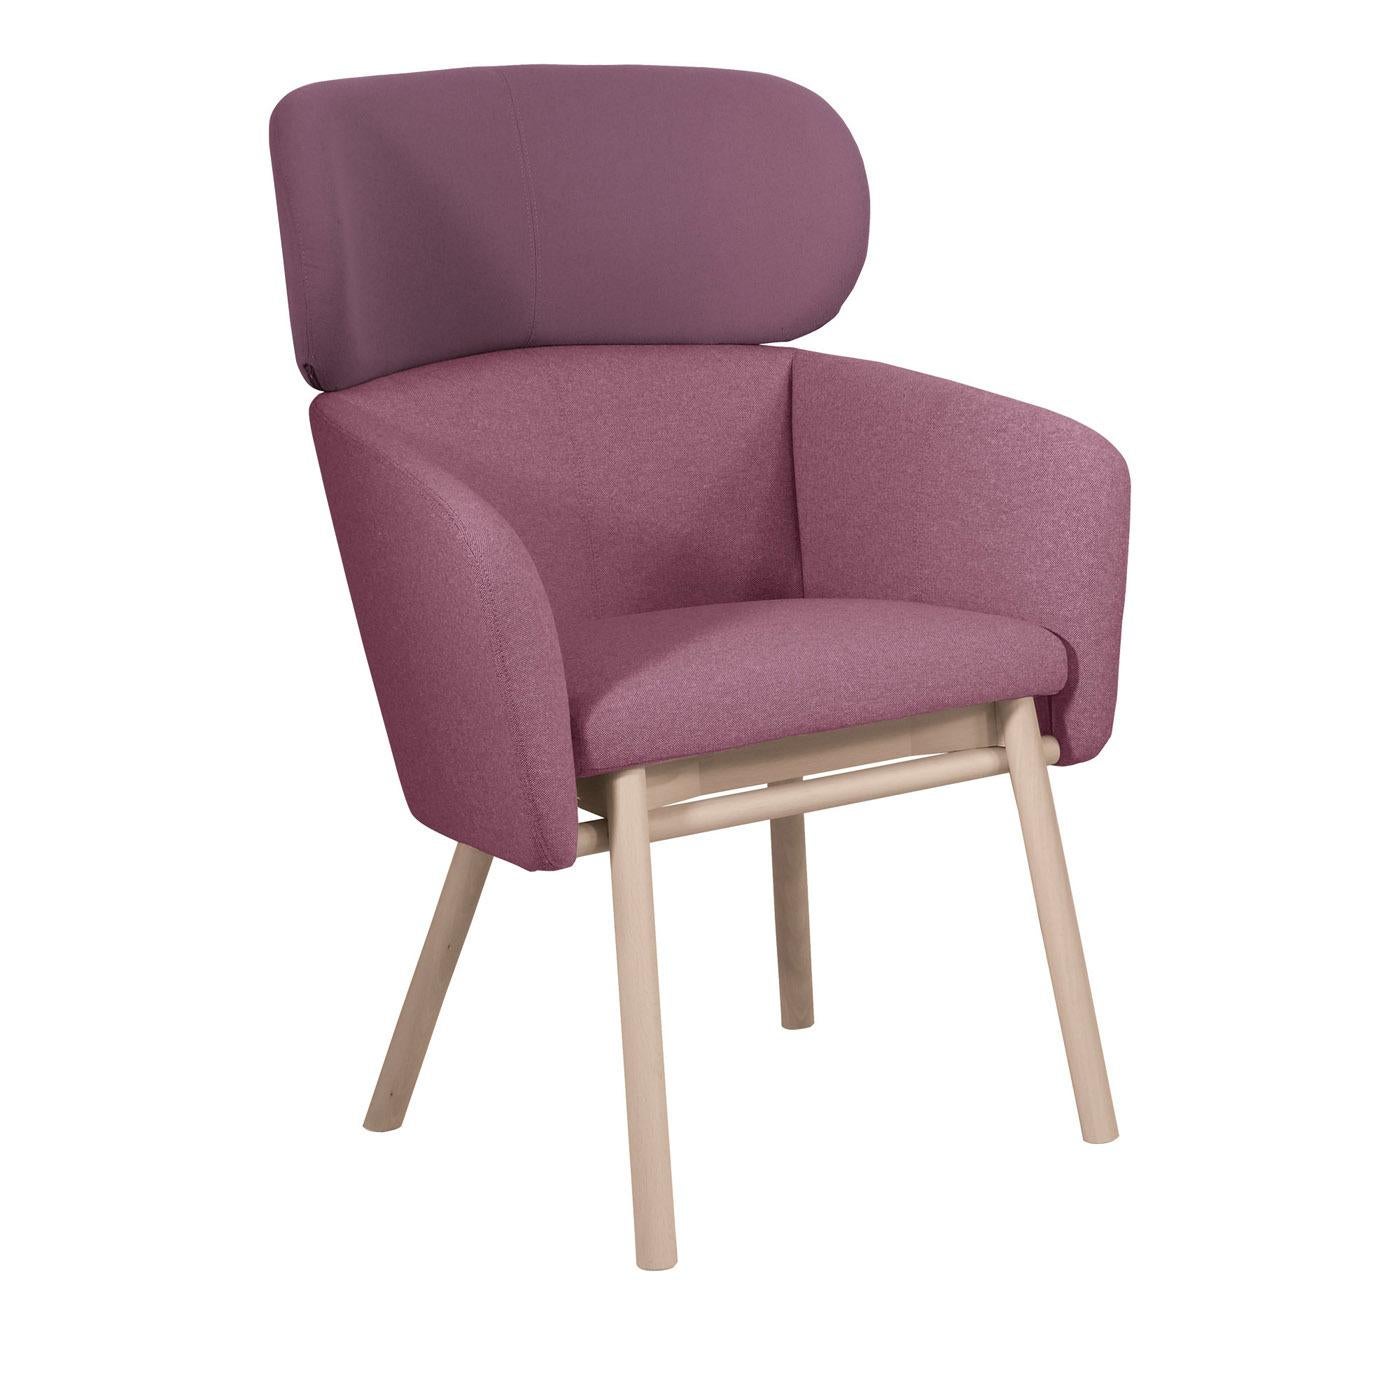 Dieser atemberaubende Stuhl ist ein zarter und gemütlicher Akzent in einem modernen Wohn- oder Esszimmer. Die solide, schlichte Struktur besteht aus gebleichtem Buchenholz und ruht auf vier langen, schrägen Beinen. Eine geräumigere Version des von